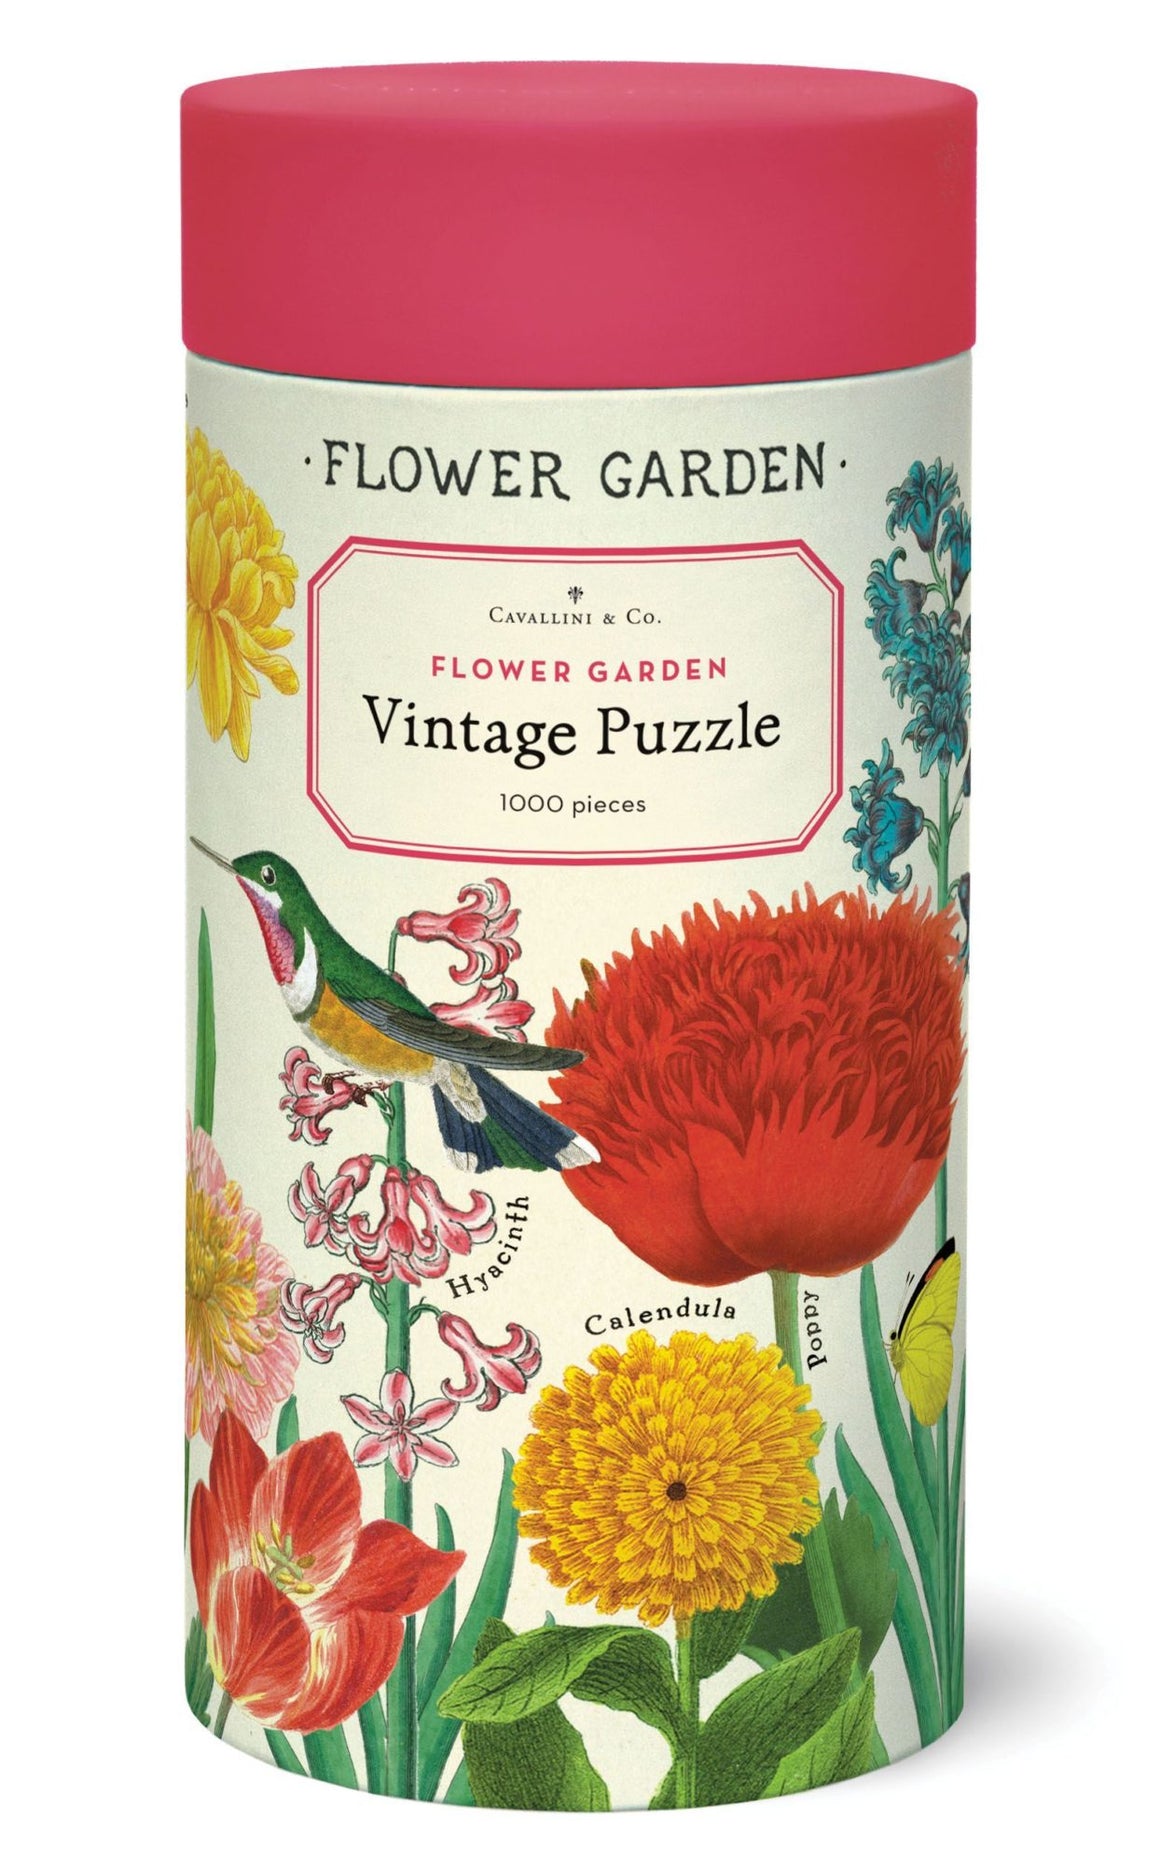 Vintage Puzzle - Flower Garden